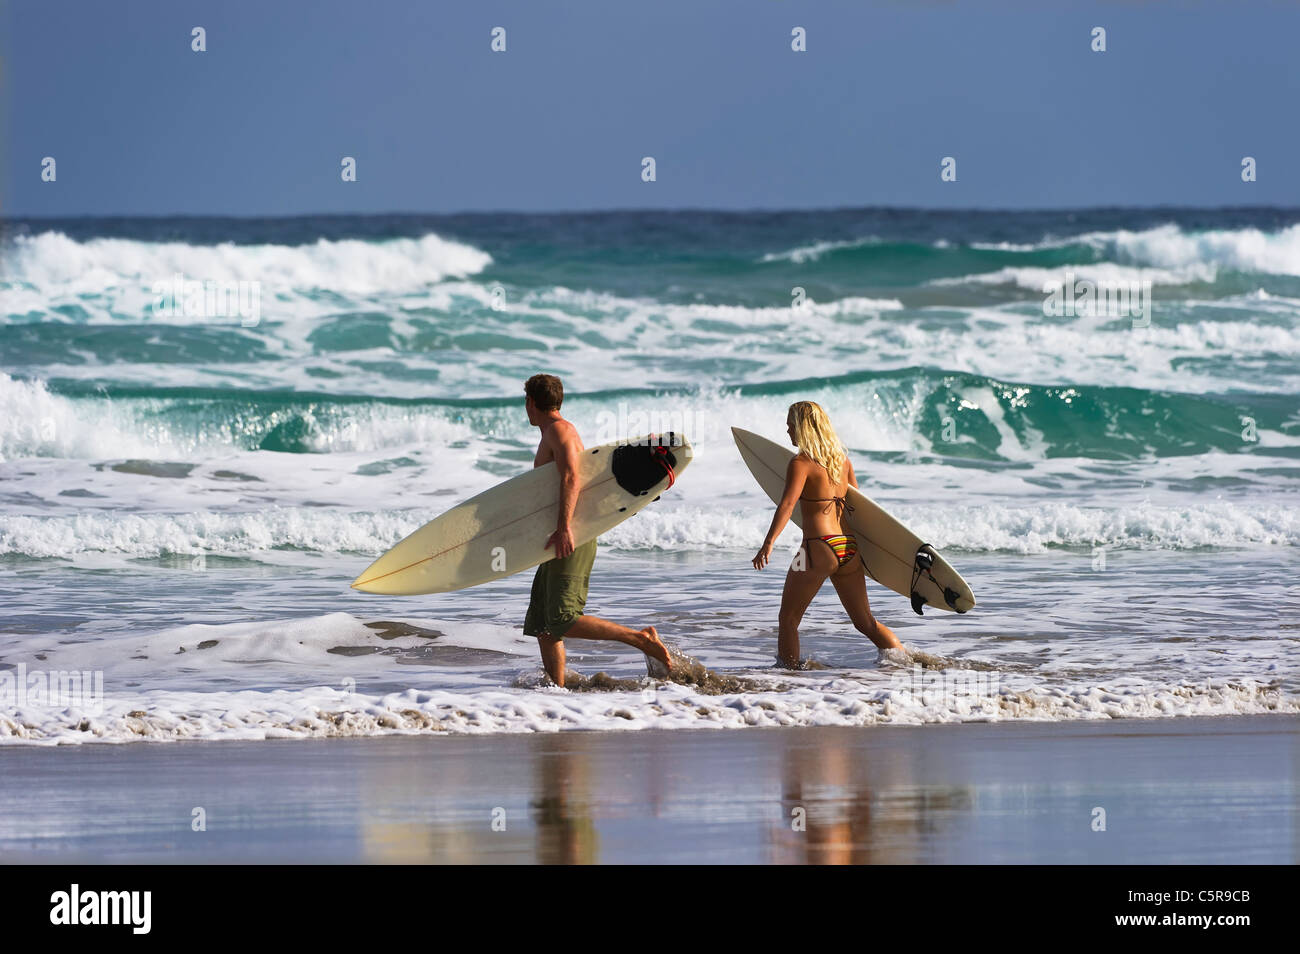 Zwei Surfer auf den Wellen des Ozeans. Stockfoto